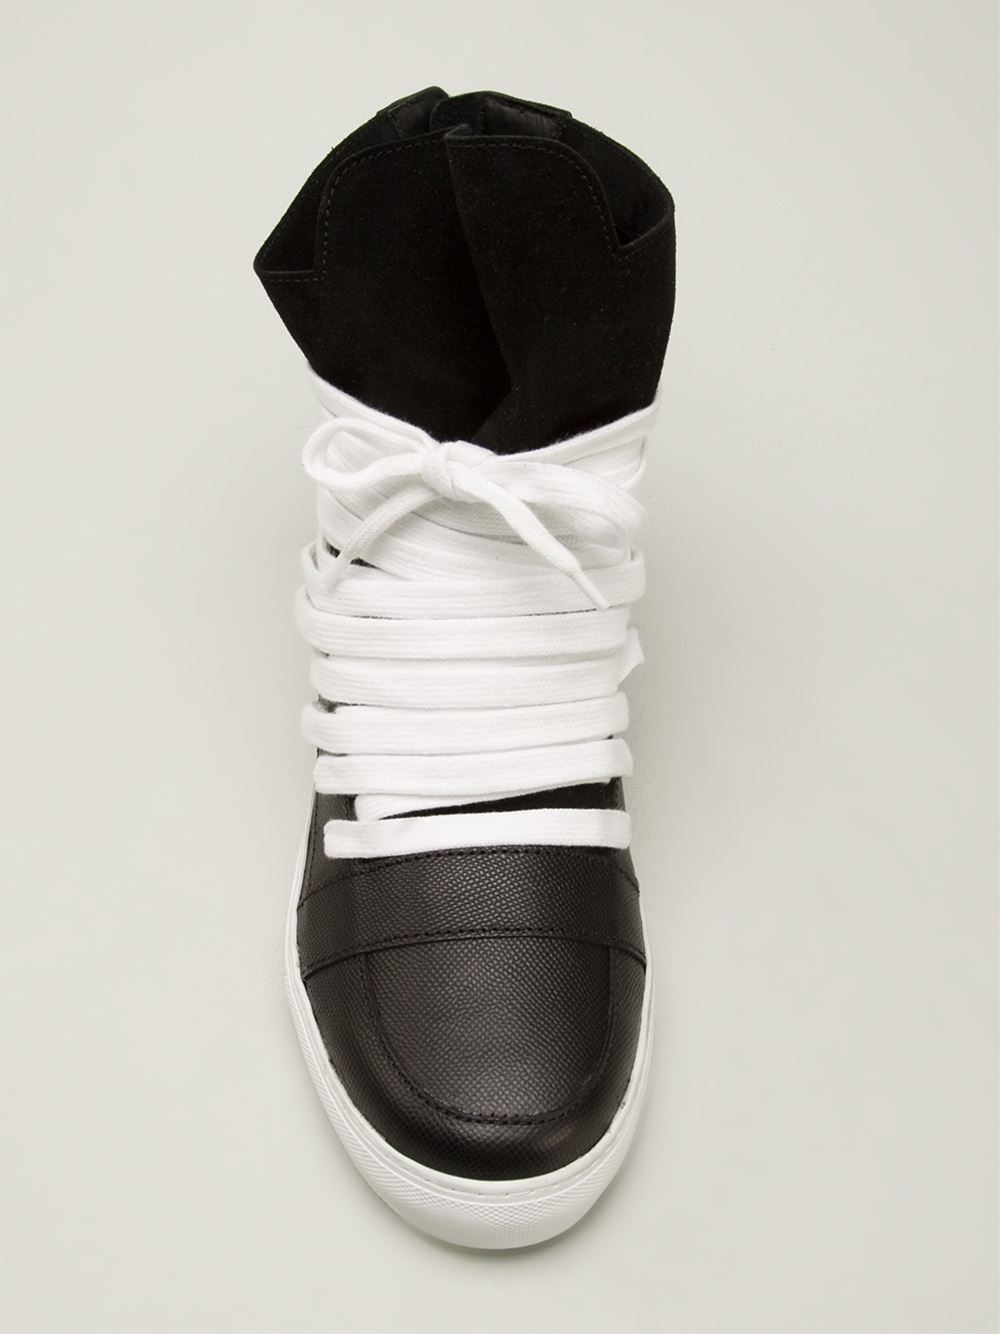 Kris Van Assche Panelled Hi-Top Sneakers in Black for Men | Lyst